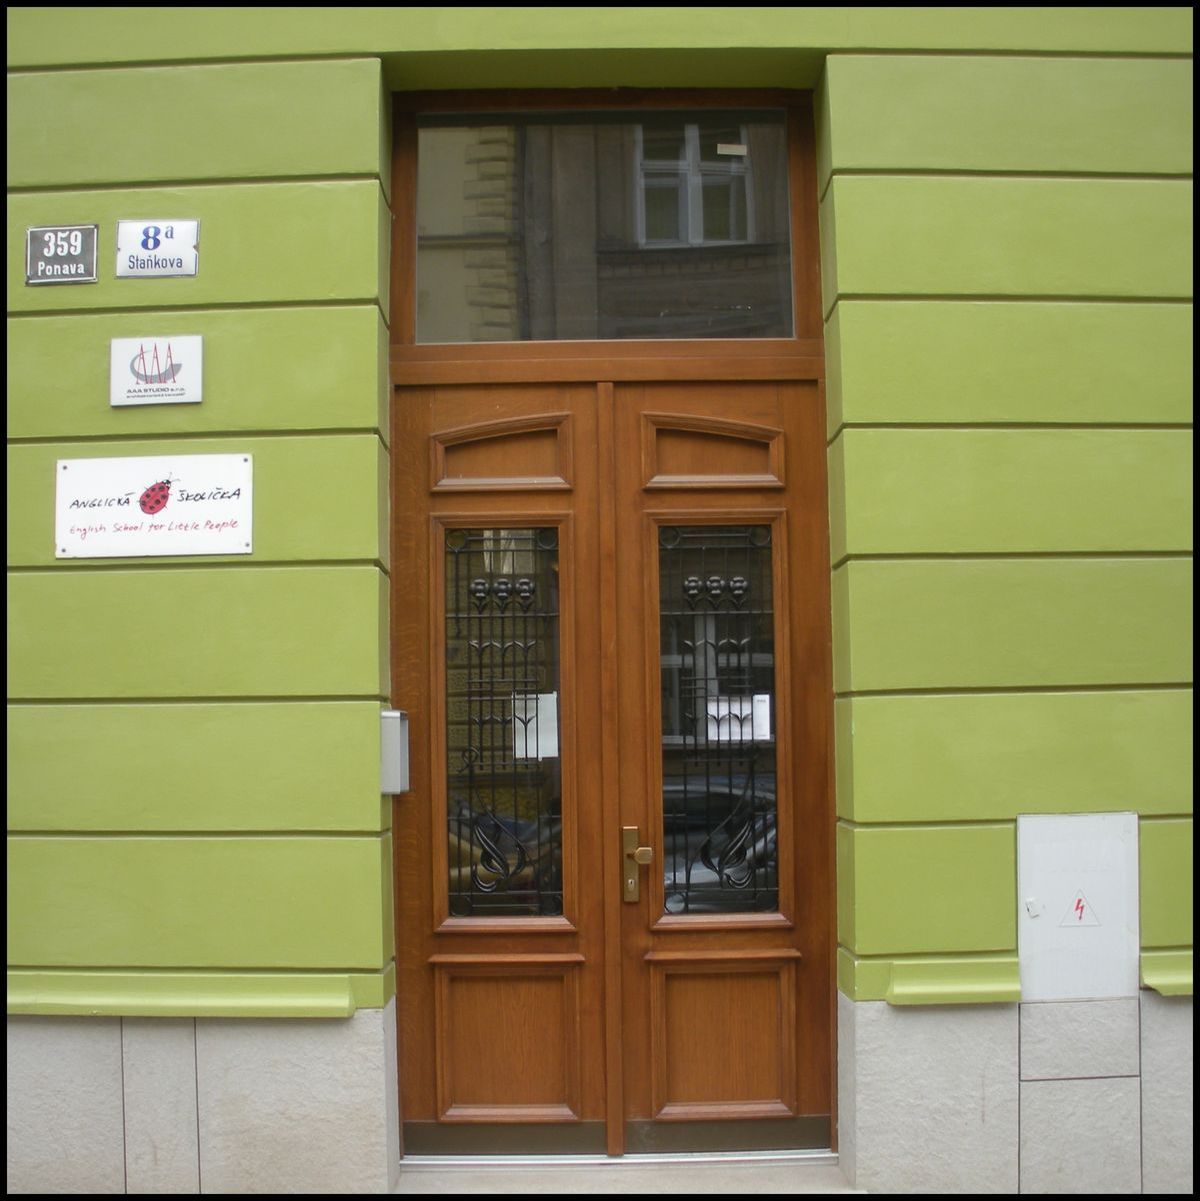 Vchodové dveře vyrobené jako kopie původních dveří